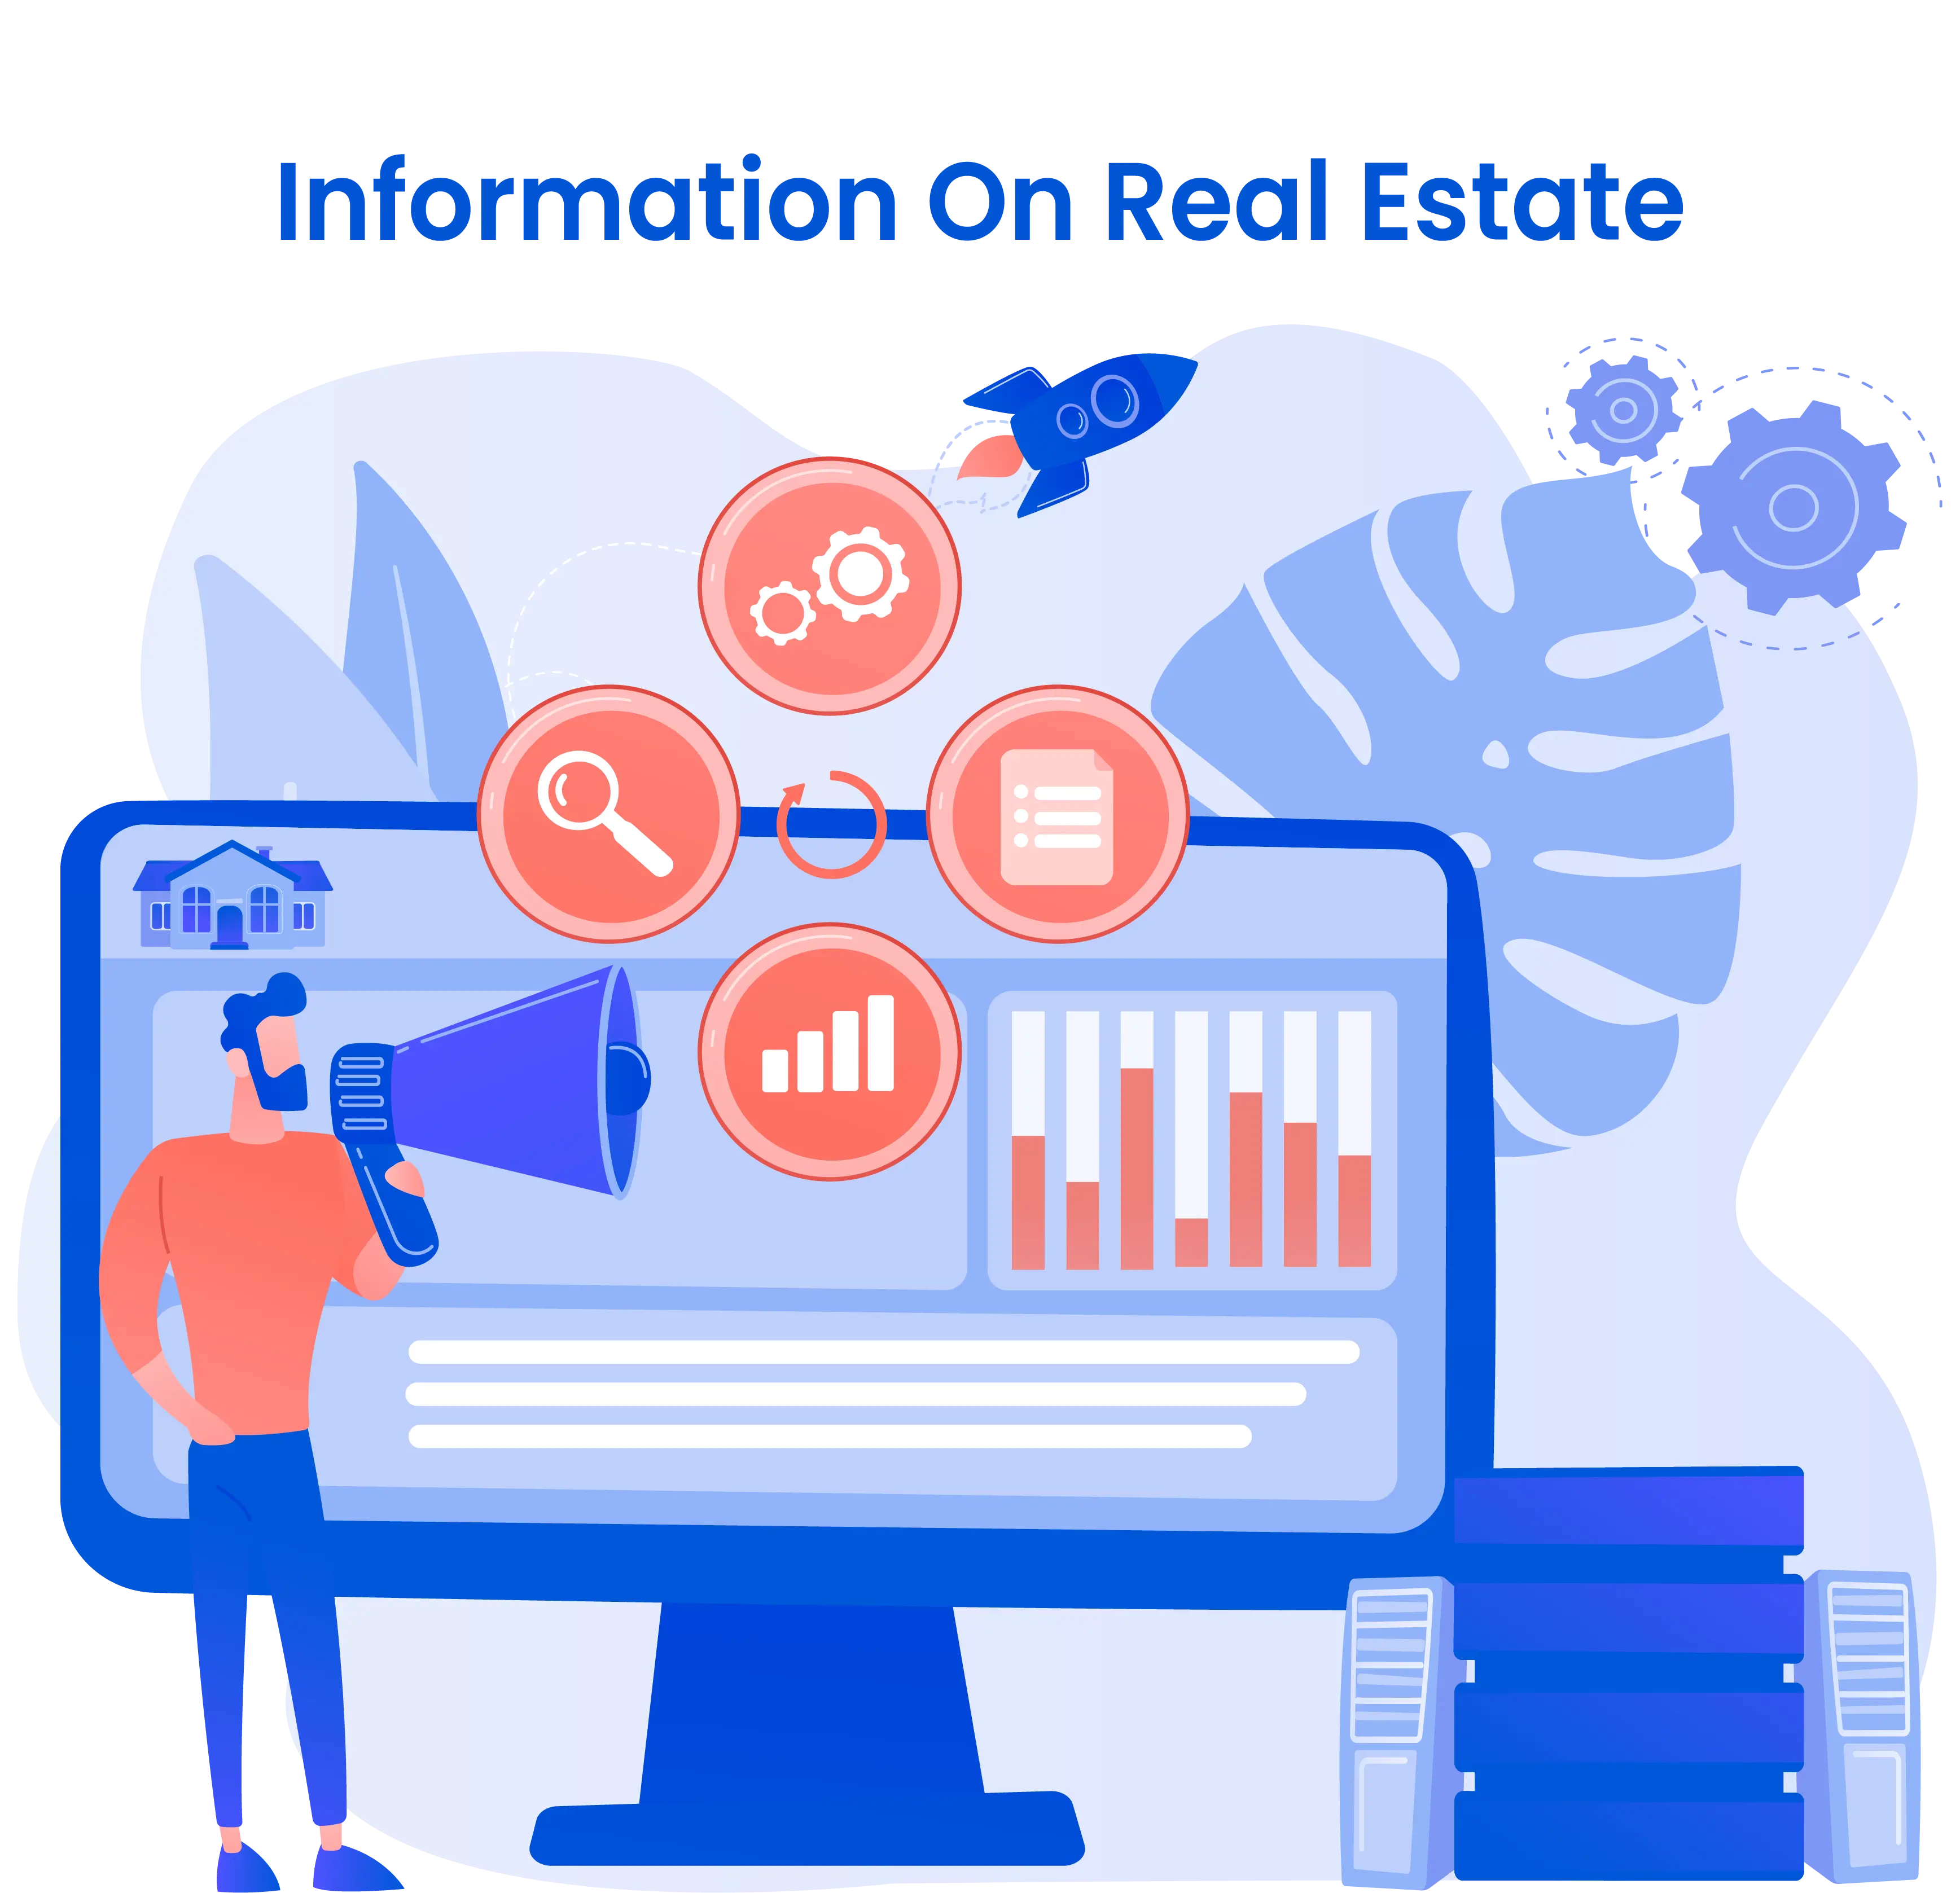 Information on Real Estate